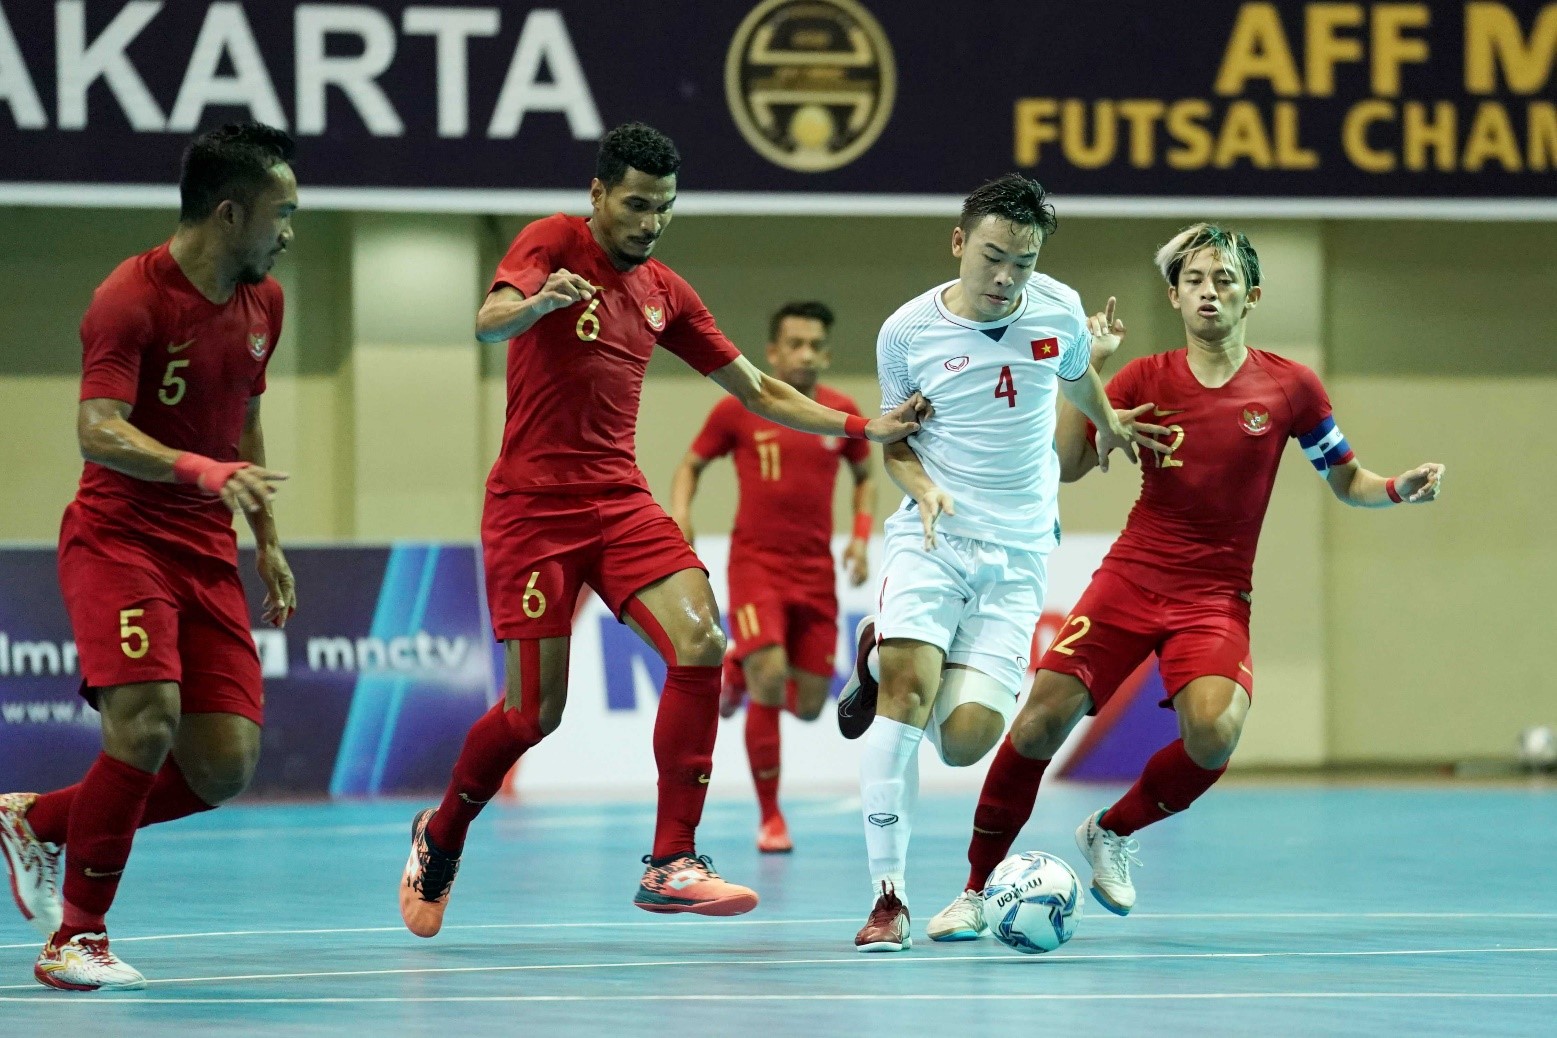 Dù có bàn thắng vươn lên dẫn trước nhưng ĐT futsal Việt Nam vẫn thua ngược 1-3.